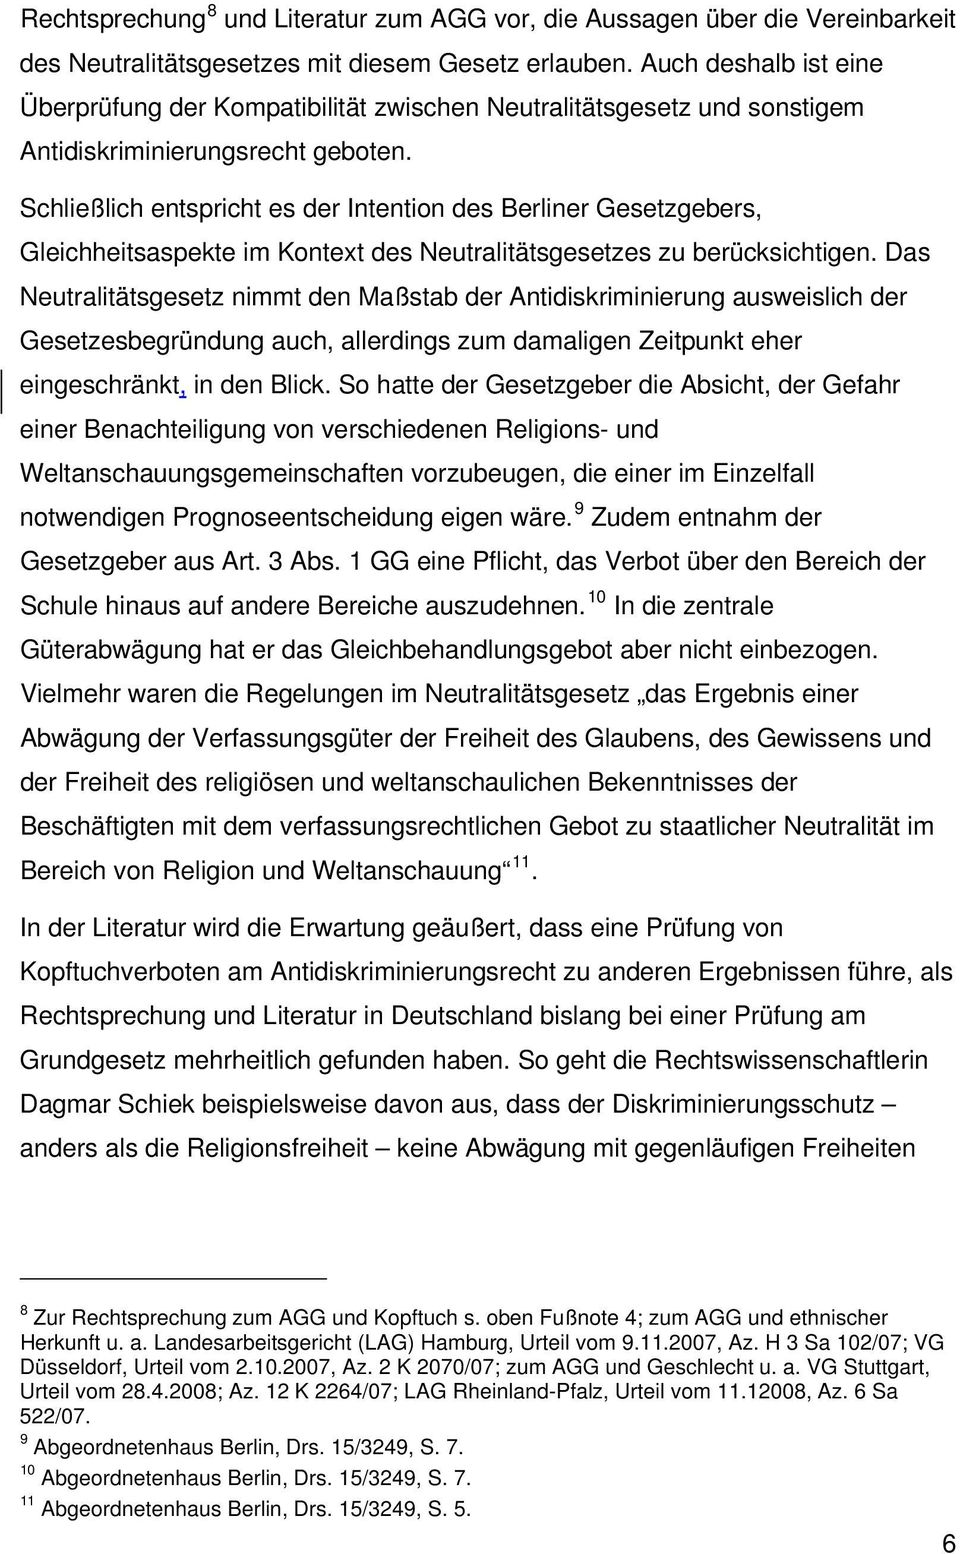 Schließlich entspricht es der Intention des Berliner Gesetzgebers, Gleichheitsaspekte im Kontext des Neutralitätsgesetzes zu berücksichtigen.